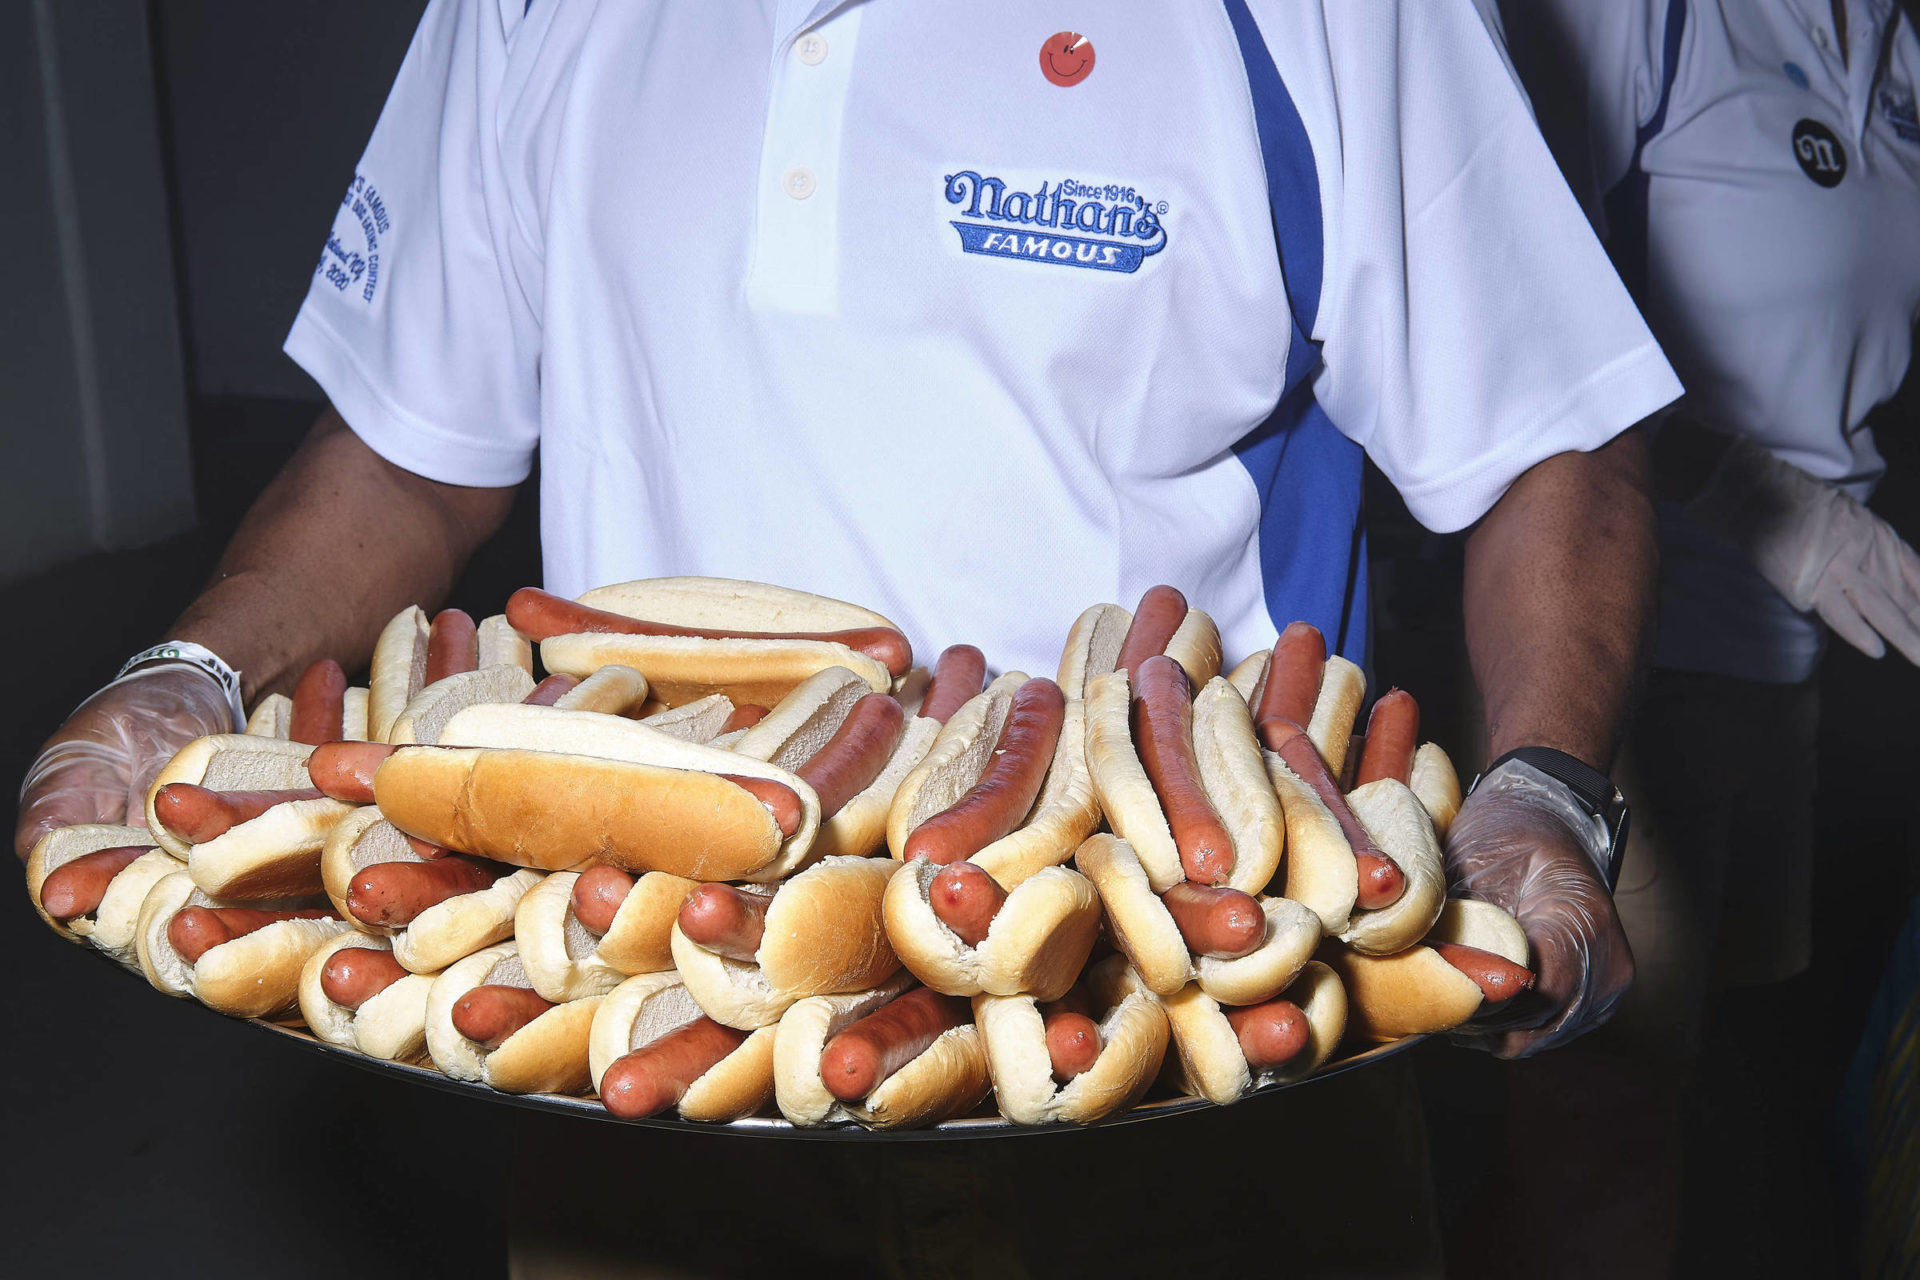 Tradicional campeonato Nathan's de comer cachorro-quente acontece na próxima segunda-feira nos Estados Unidos. (Foto: John Taggart/New York Times)